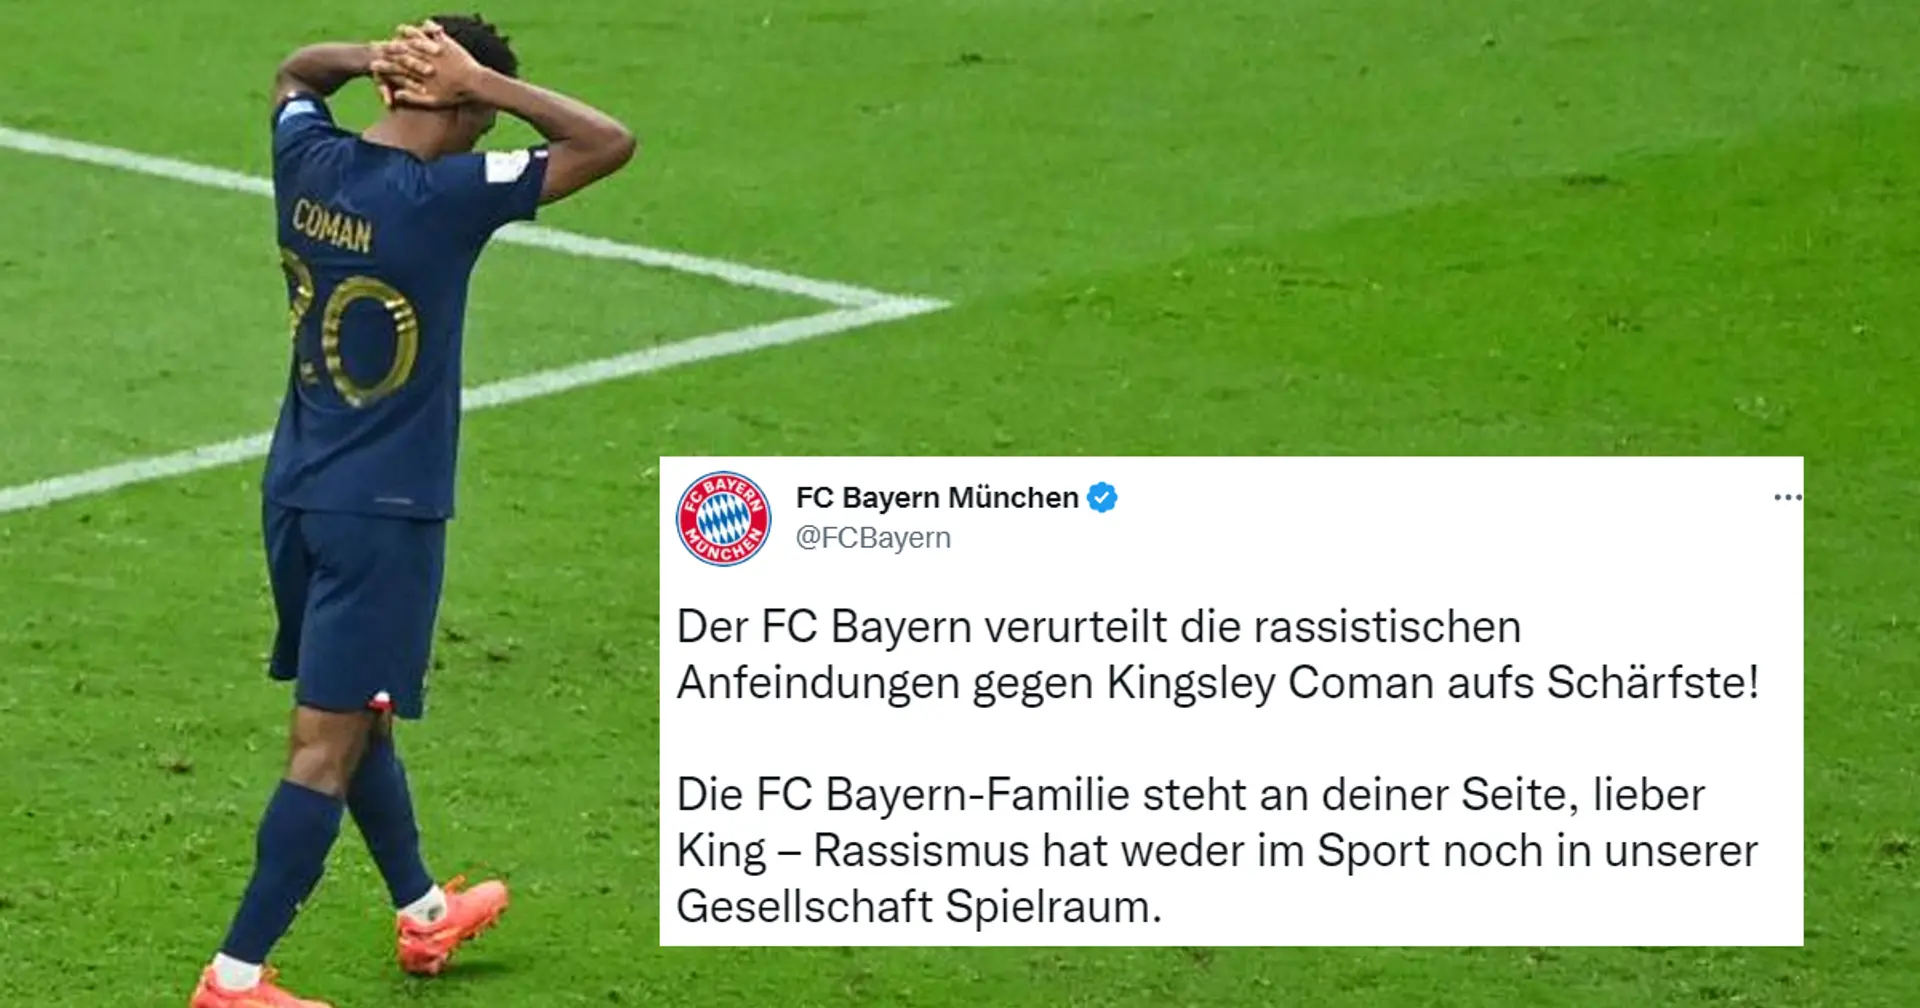 Bayern unterstützt Coman inmitten des Rassismus-Skandals: "Die FC Bayern-Familie steht an deiner Seite"